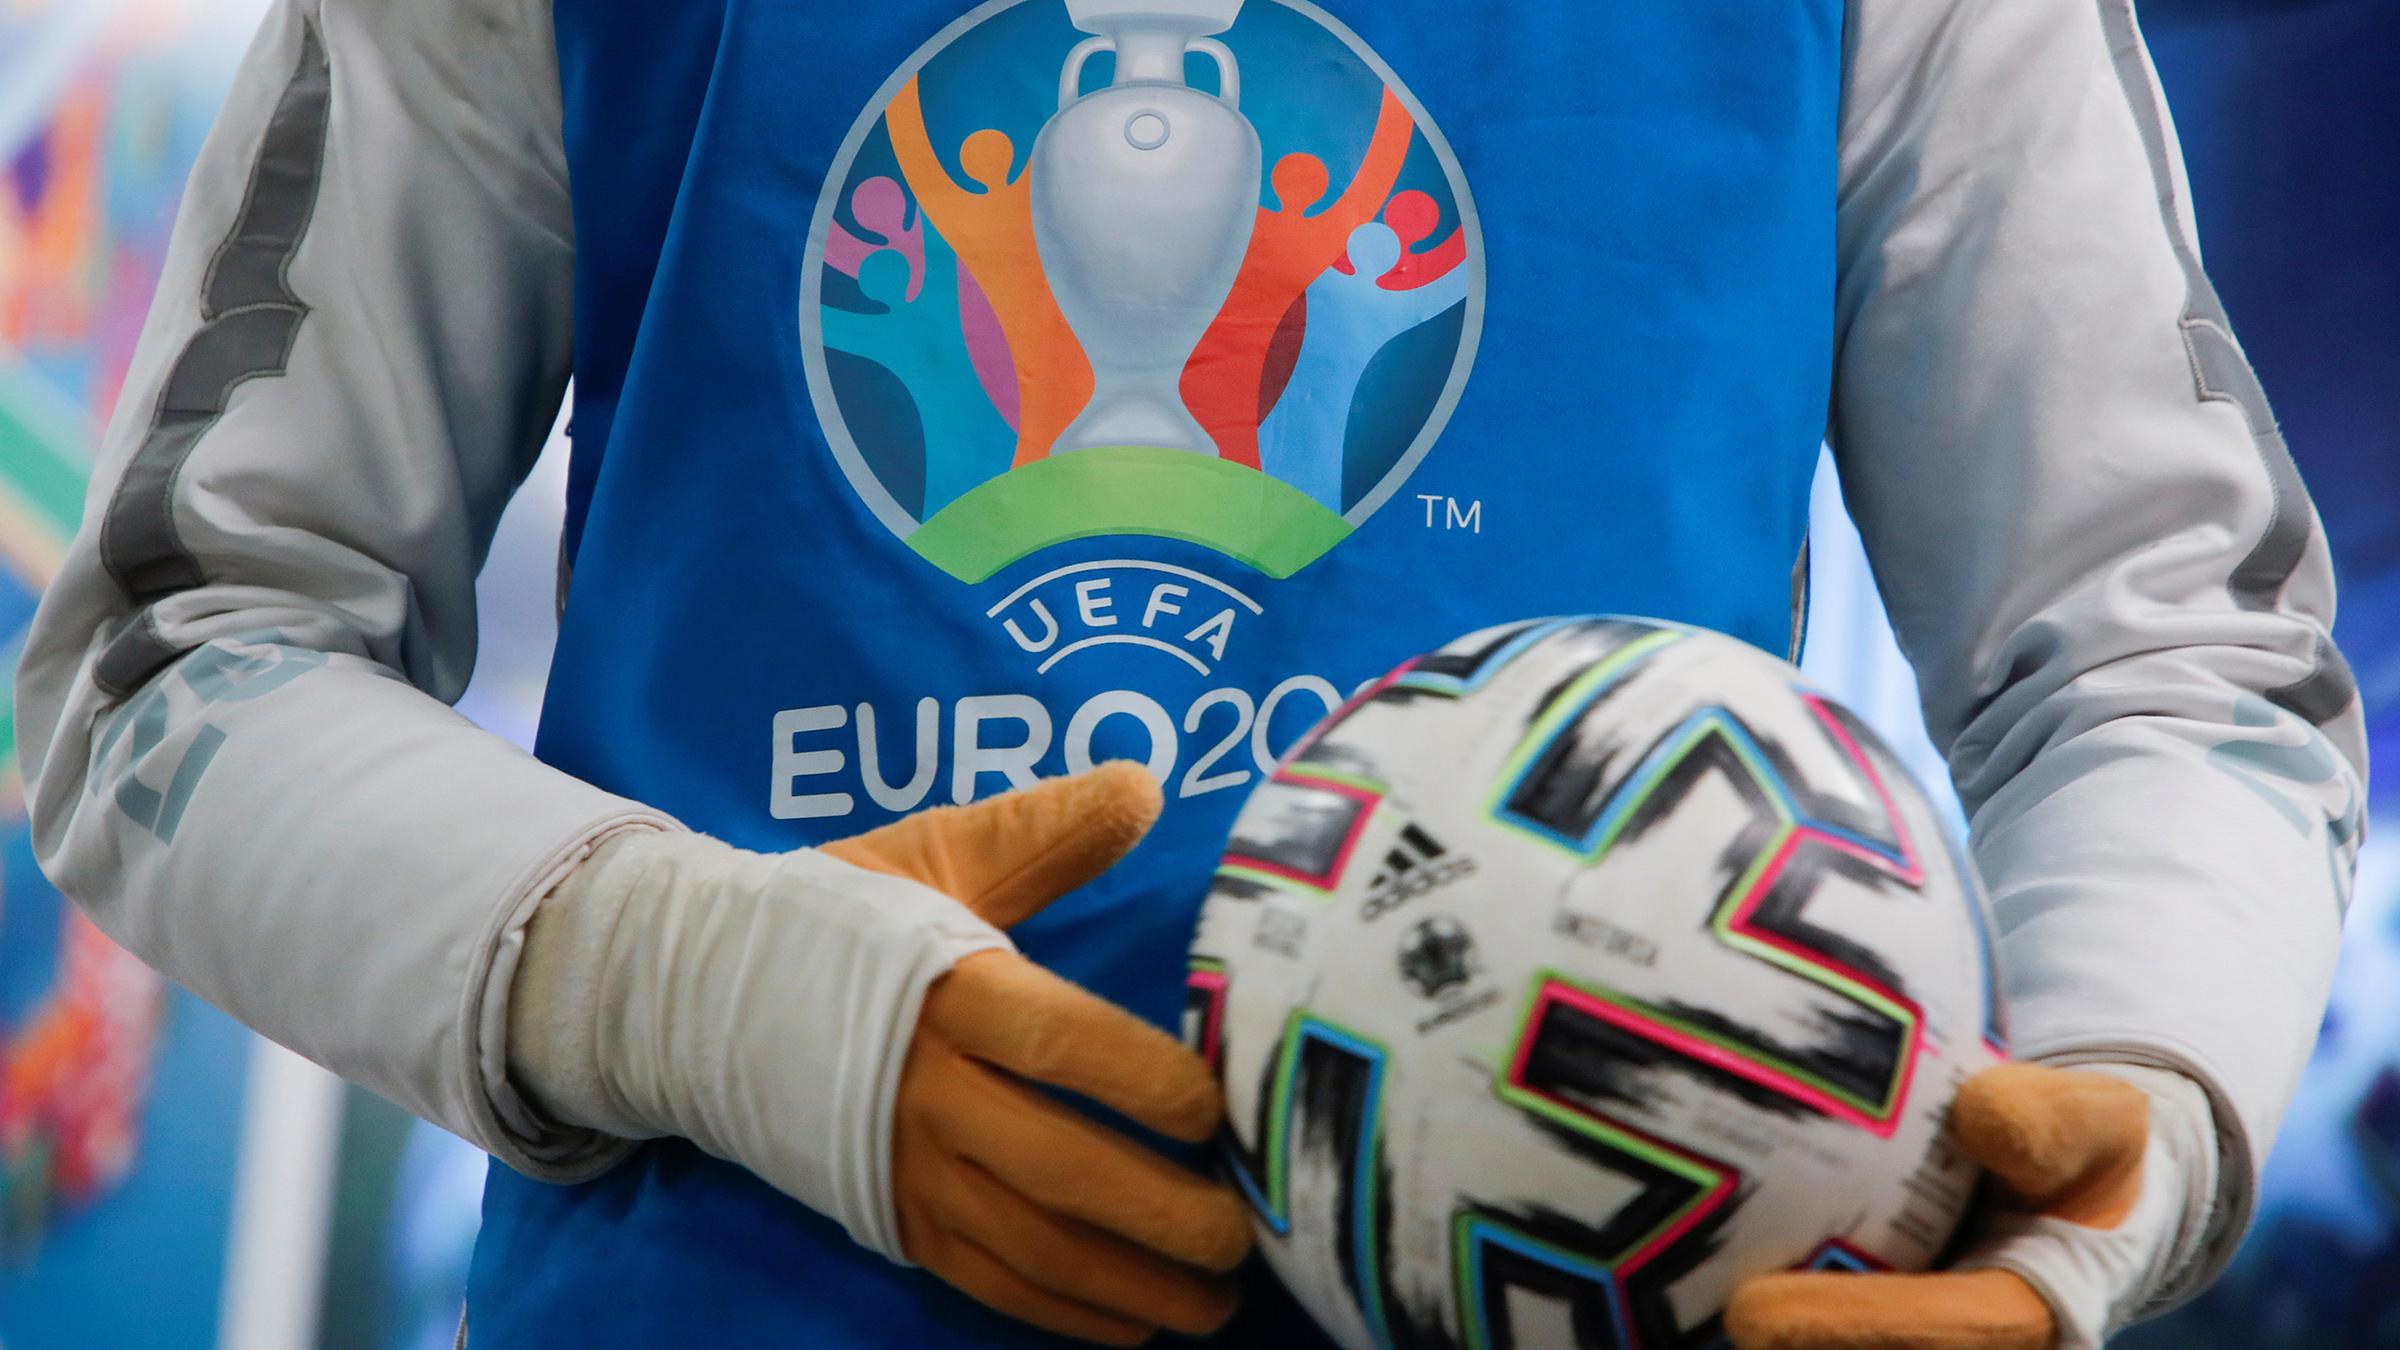 Fussball Em 2021 Dfb Pladiert Fur Paneuropaisches Turnier Zdfheute